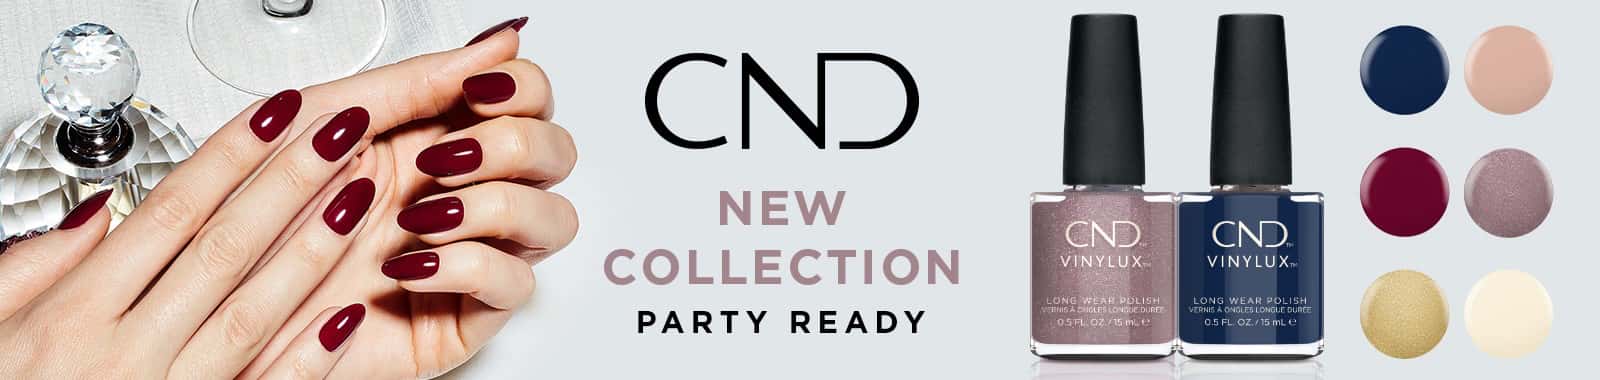 CND Vinylux Party Ready Nail Polish